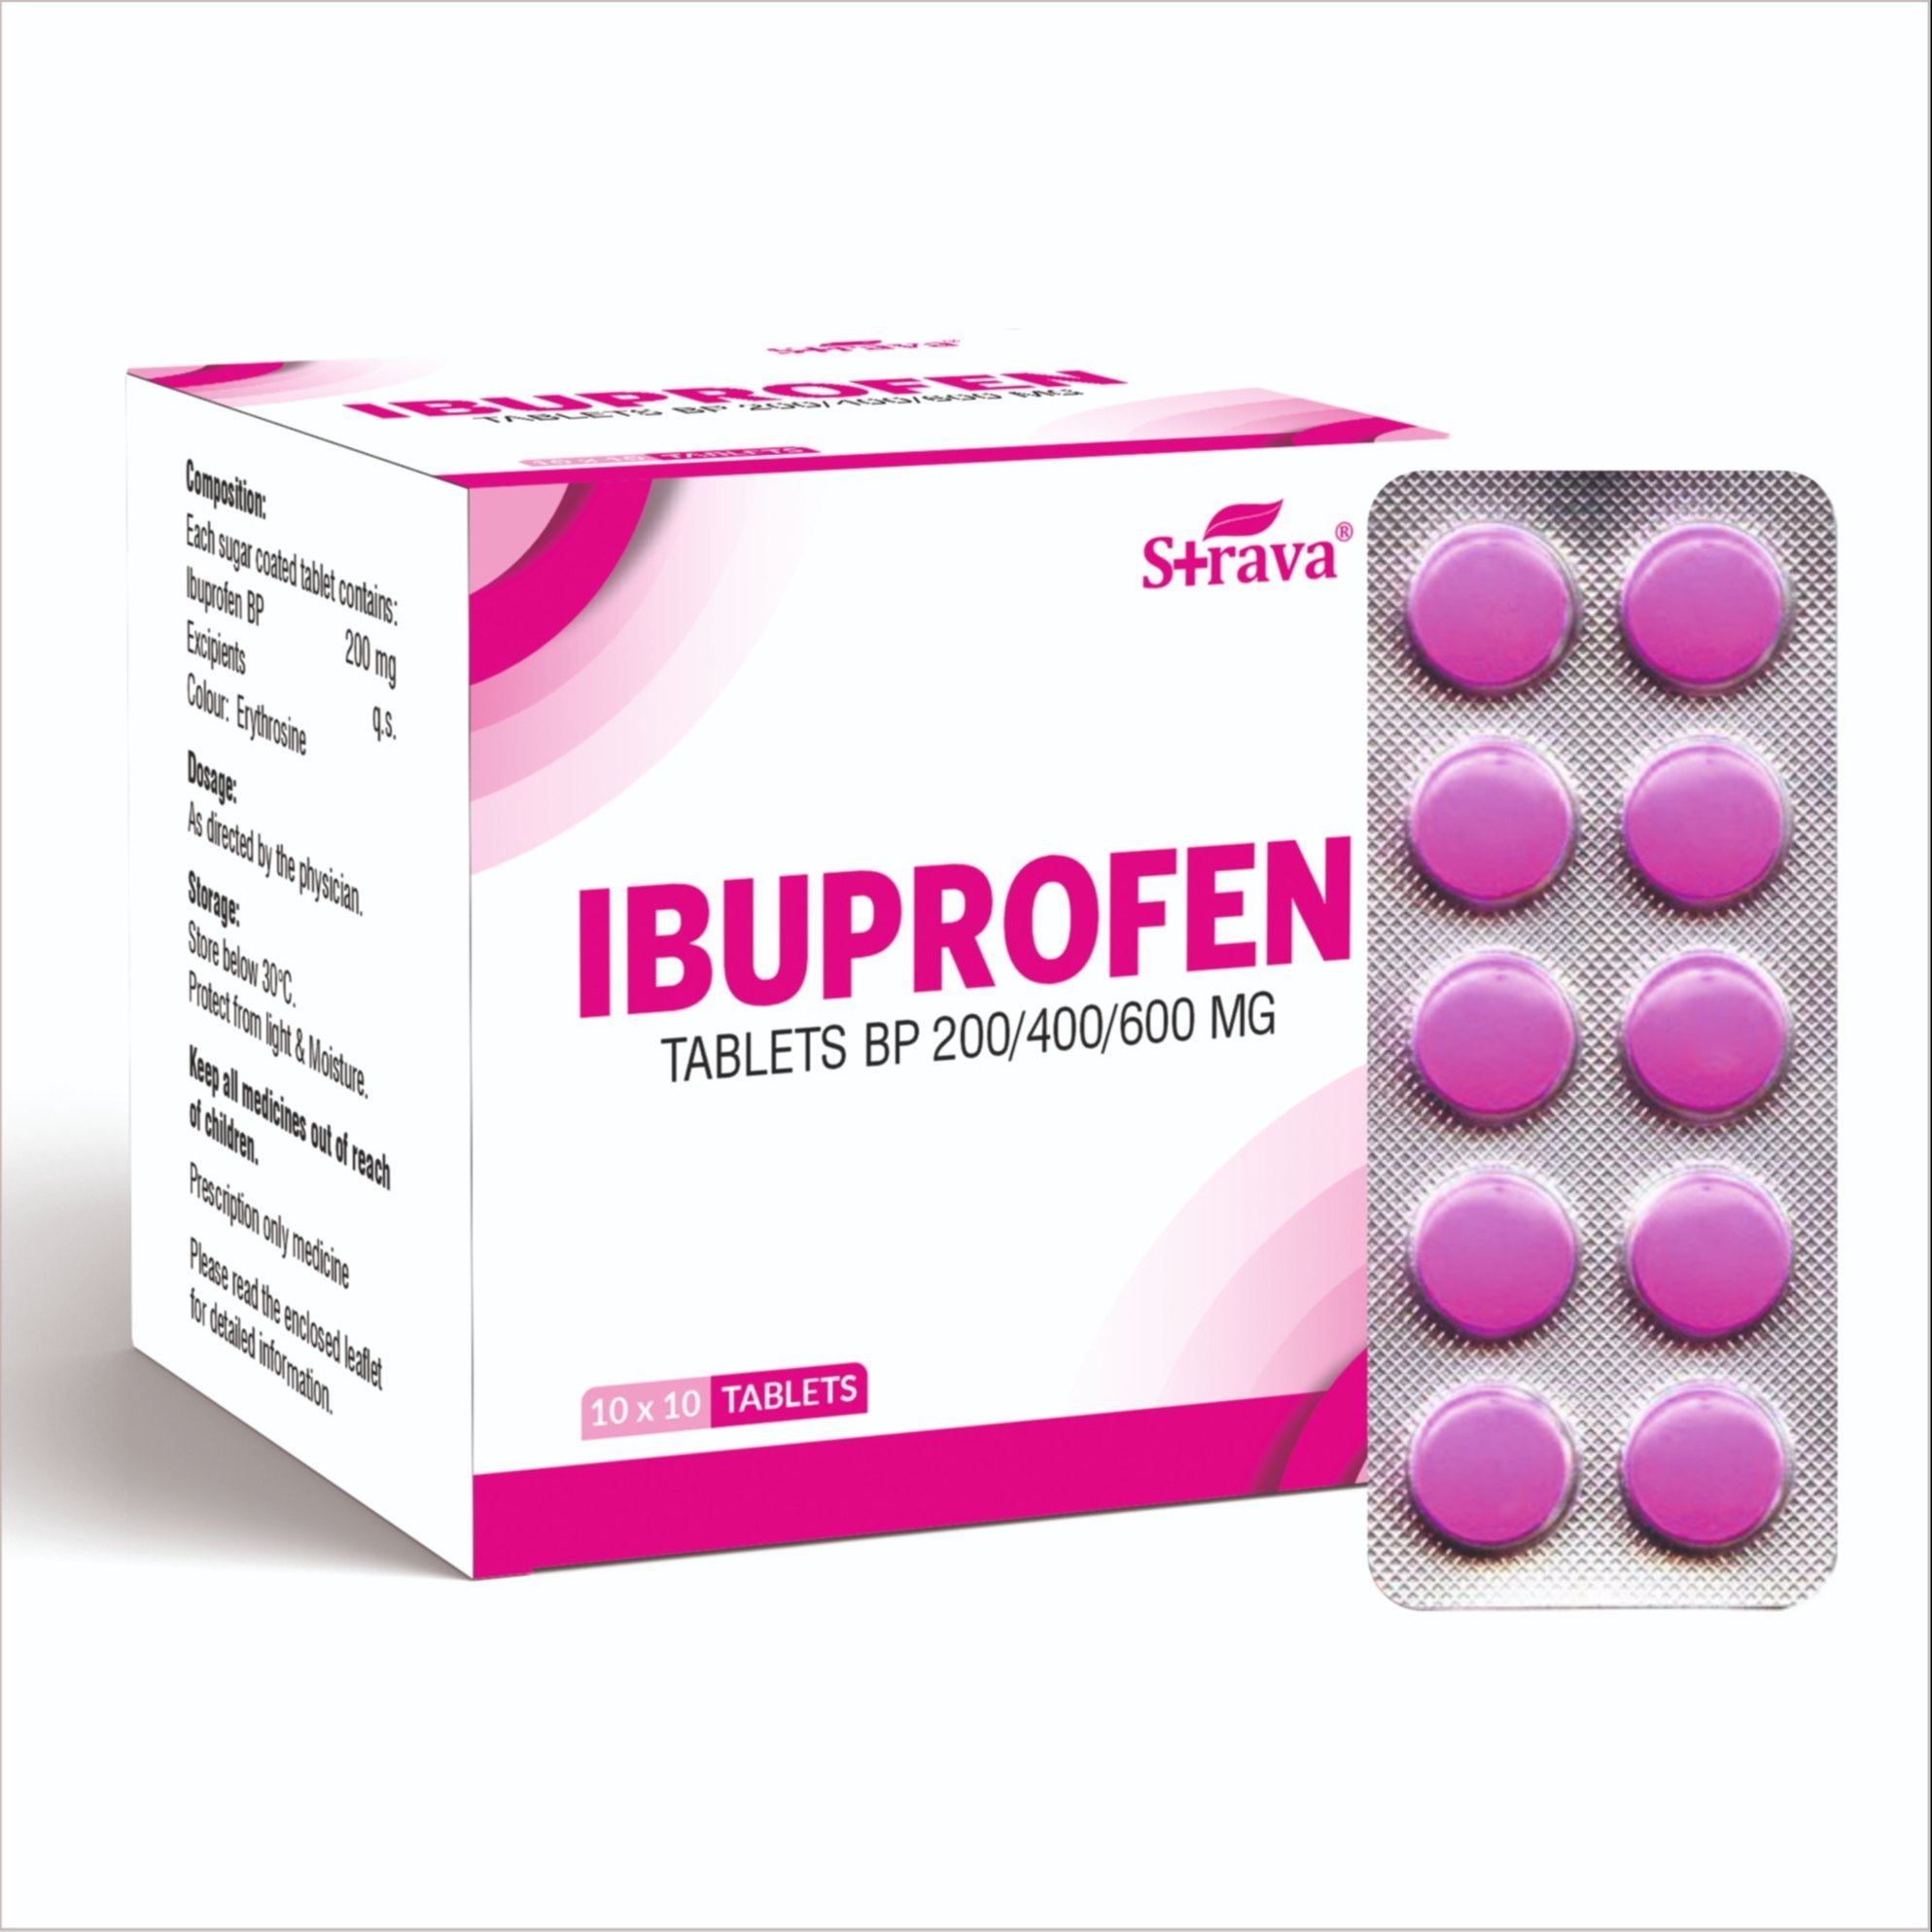 Ibuprofen Capsules